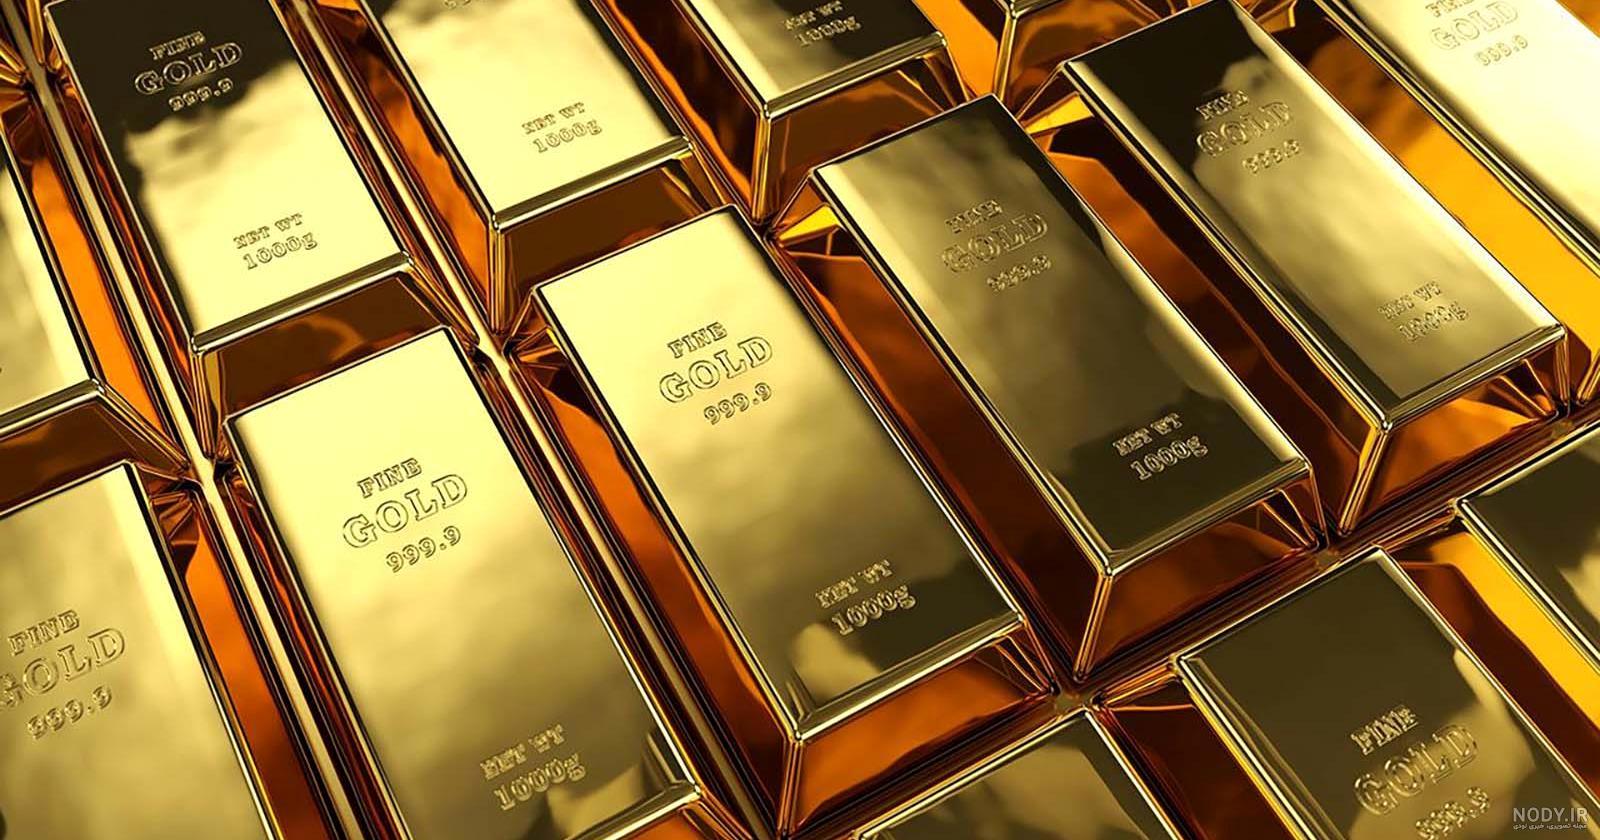 وضعیت قیمت طلا در شهریور